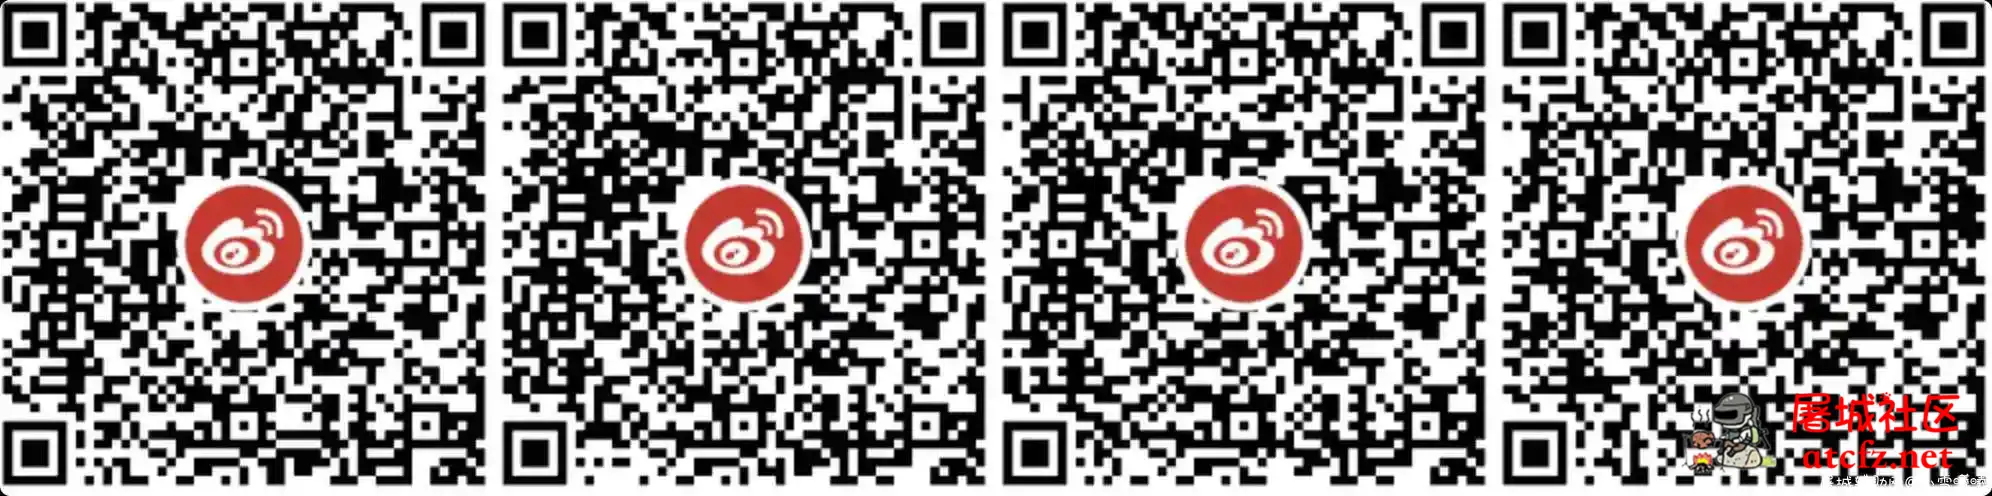 微博老用户万圣节抽3元红包活动 屠城辅助网www.tcfz1.com852